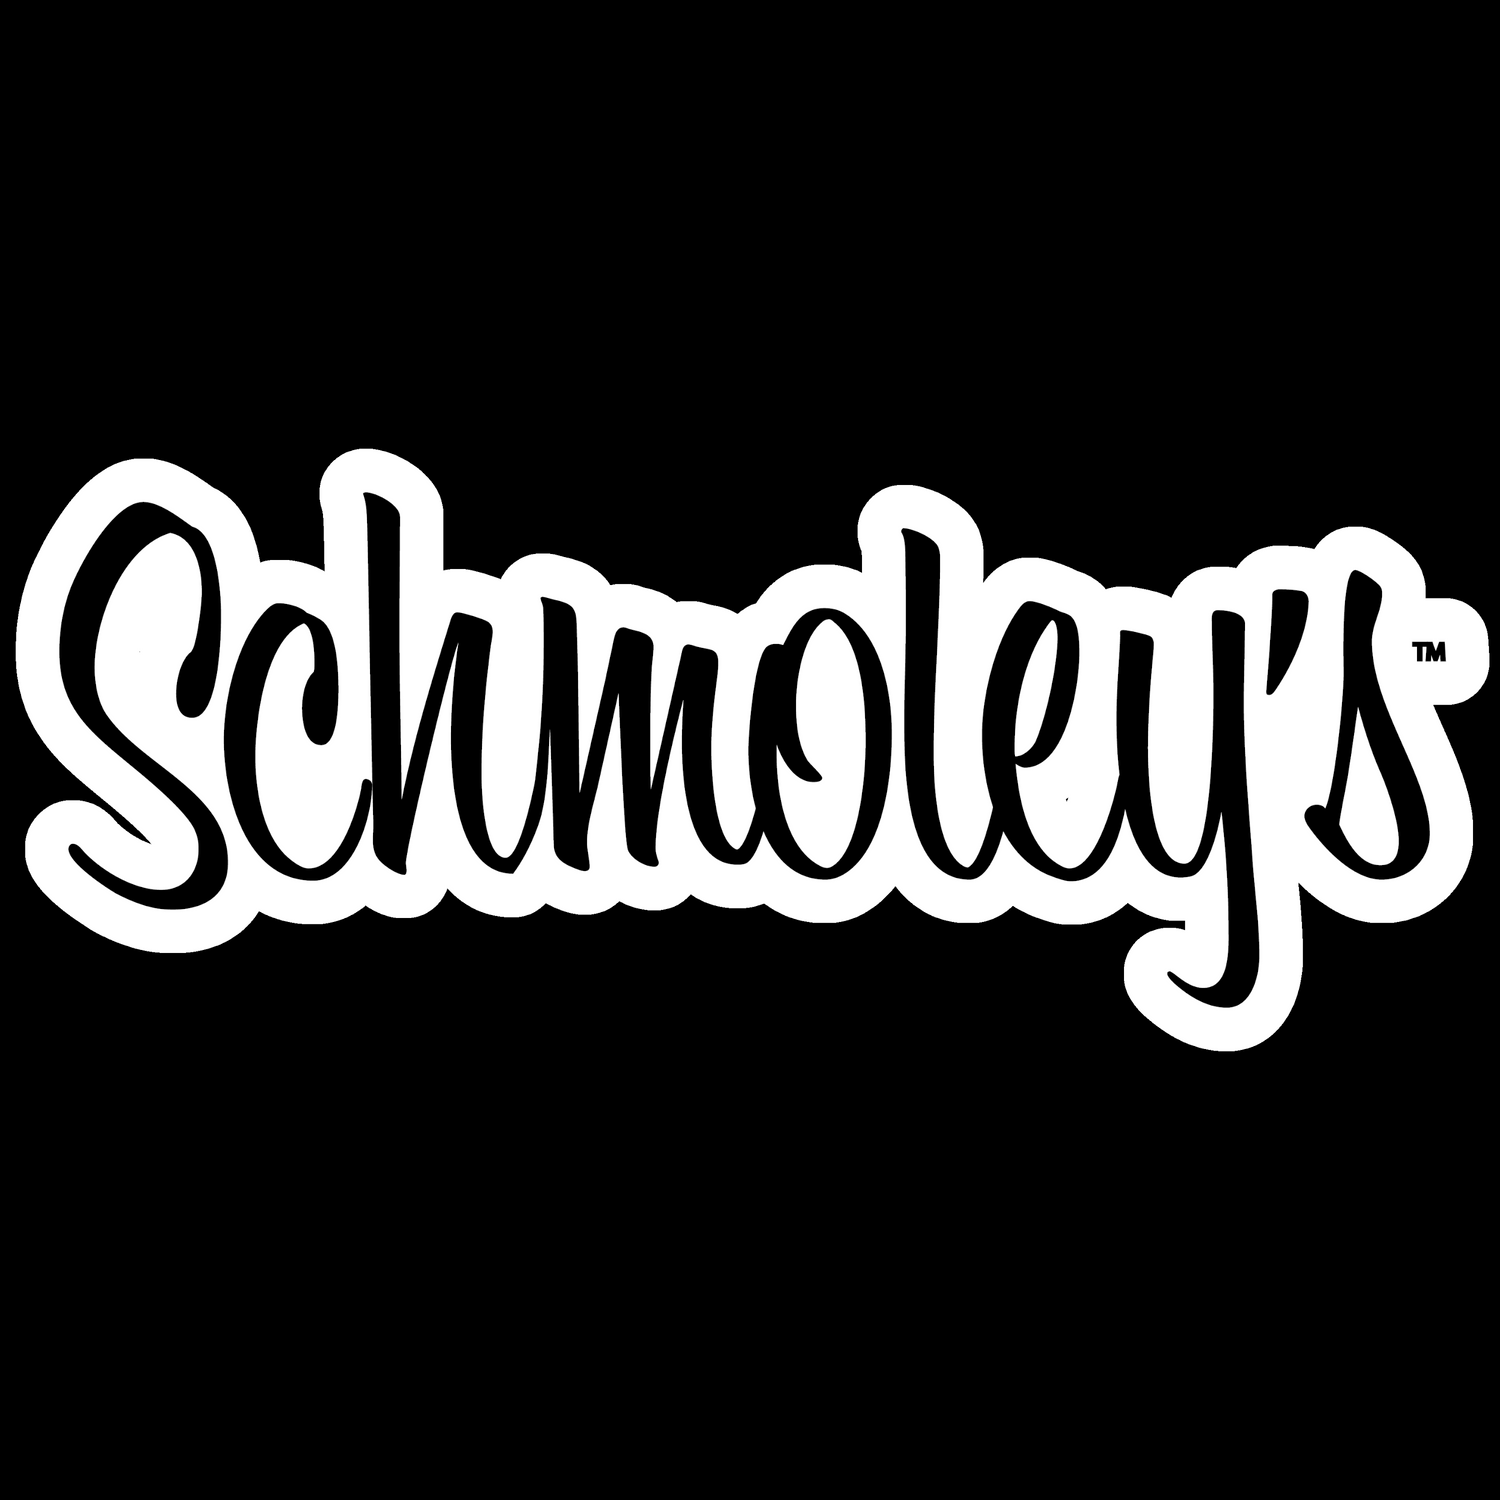 Schmoley's™